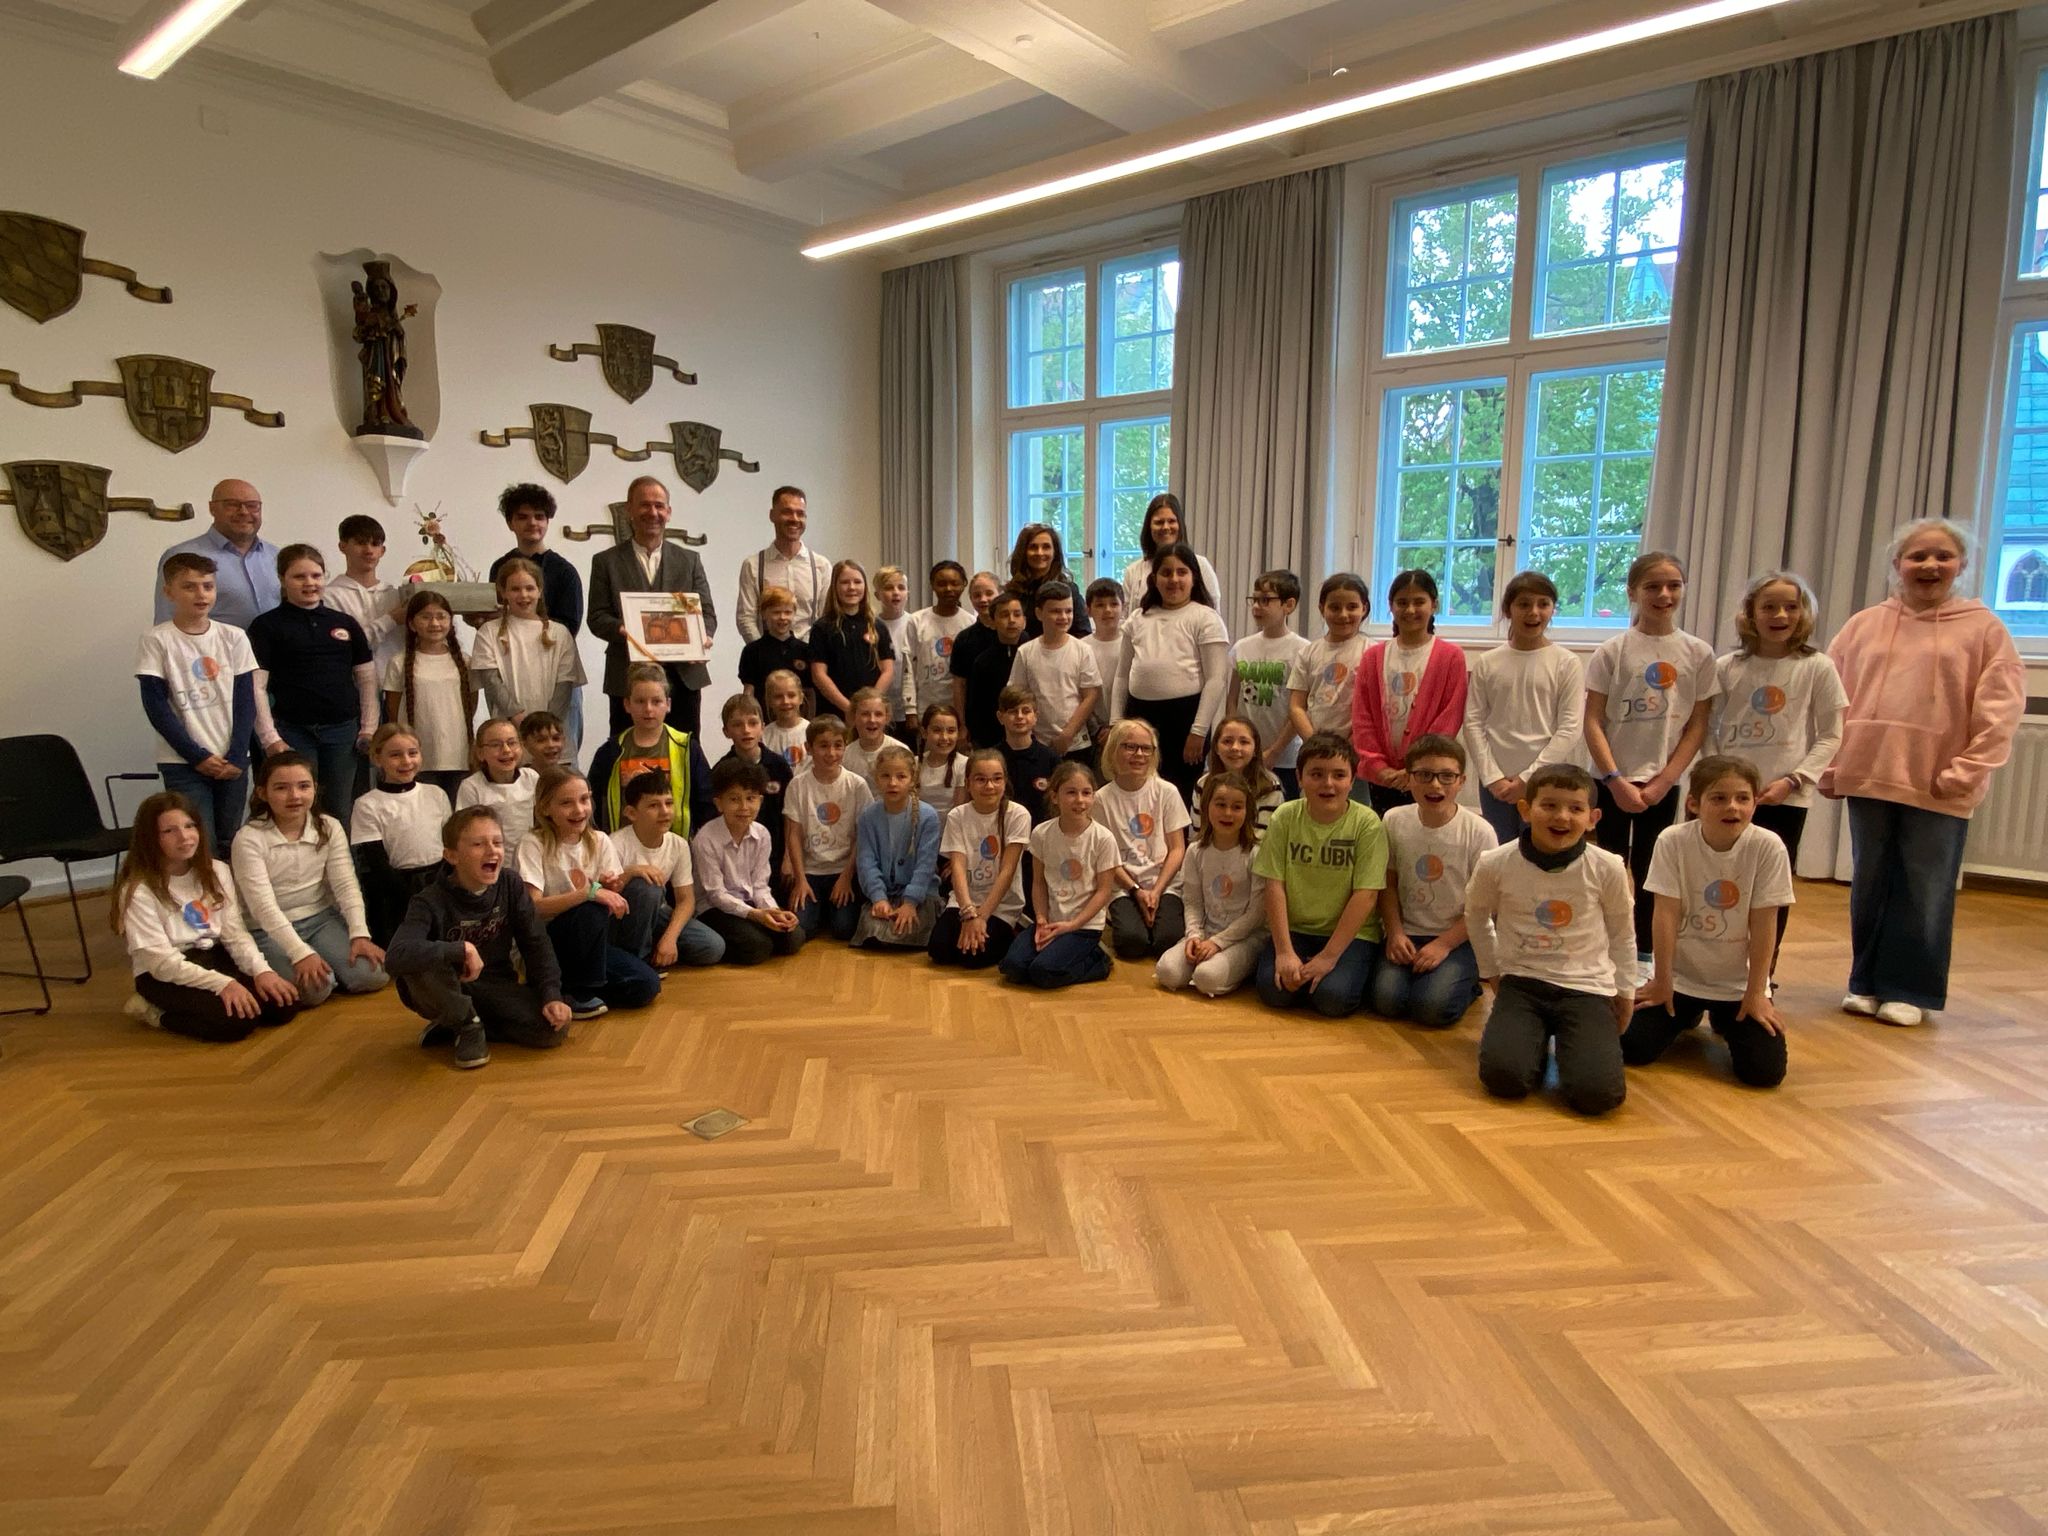 Du betrachtest gerade Schule gratuliert 1. Bürgermeister Antwerpen zum runden Geburtstag